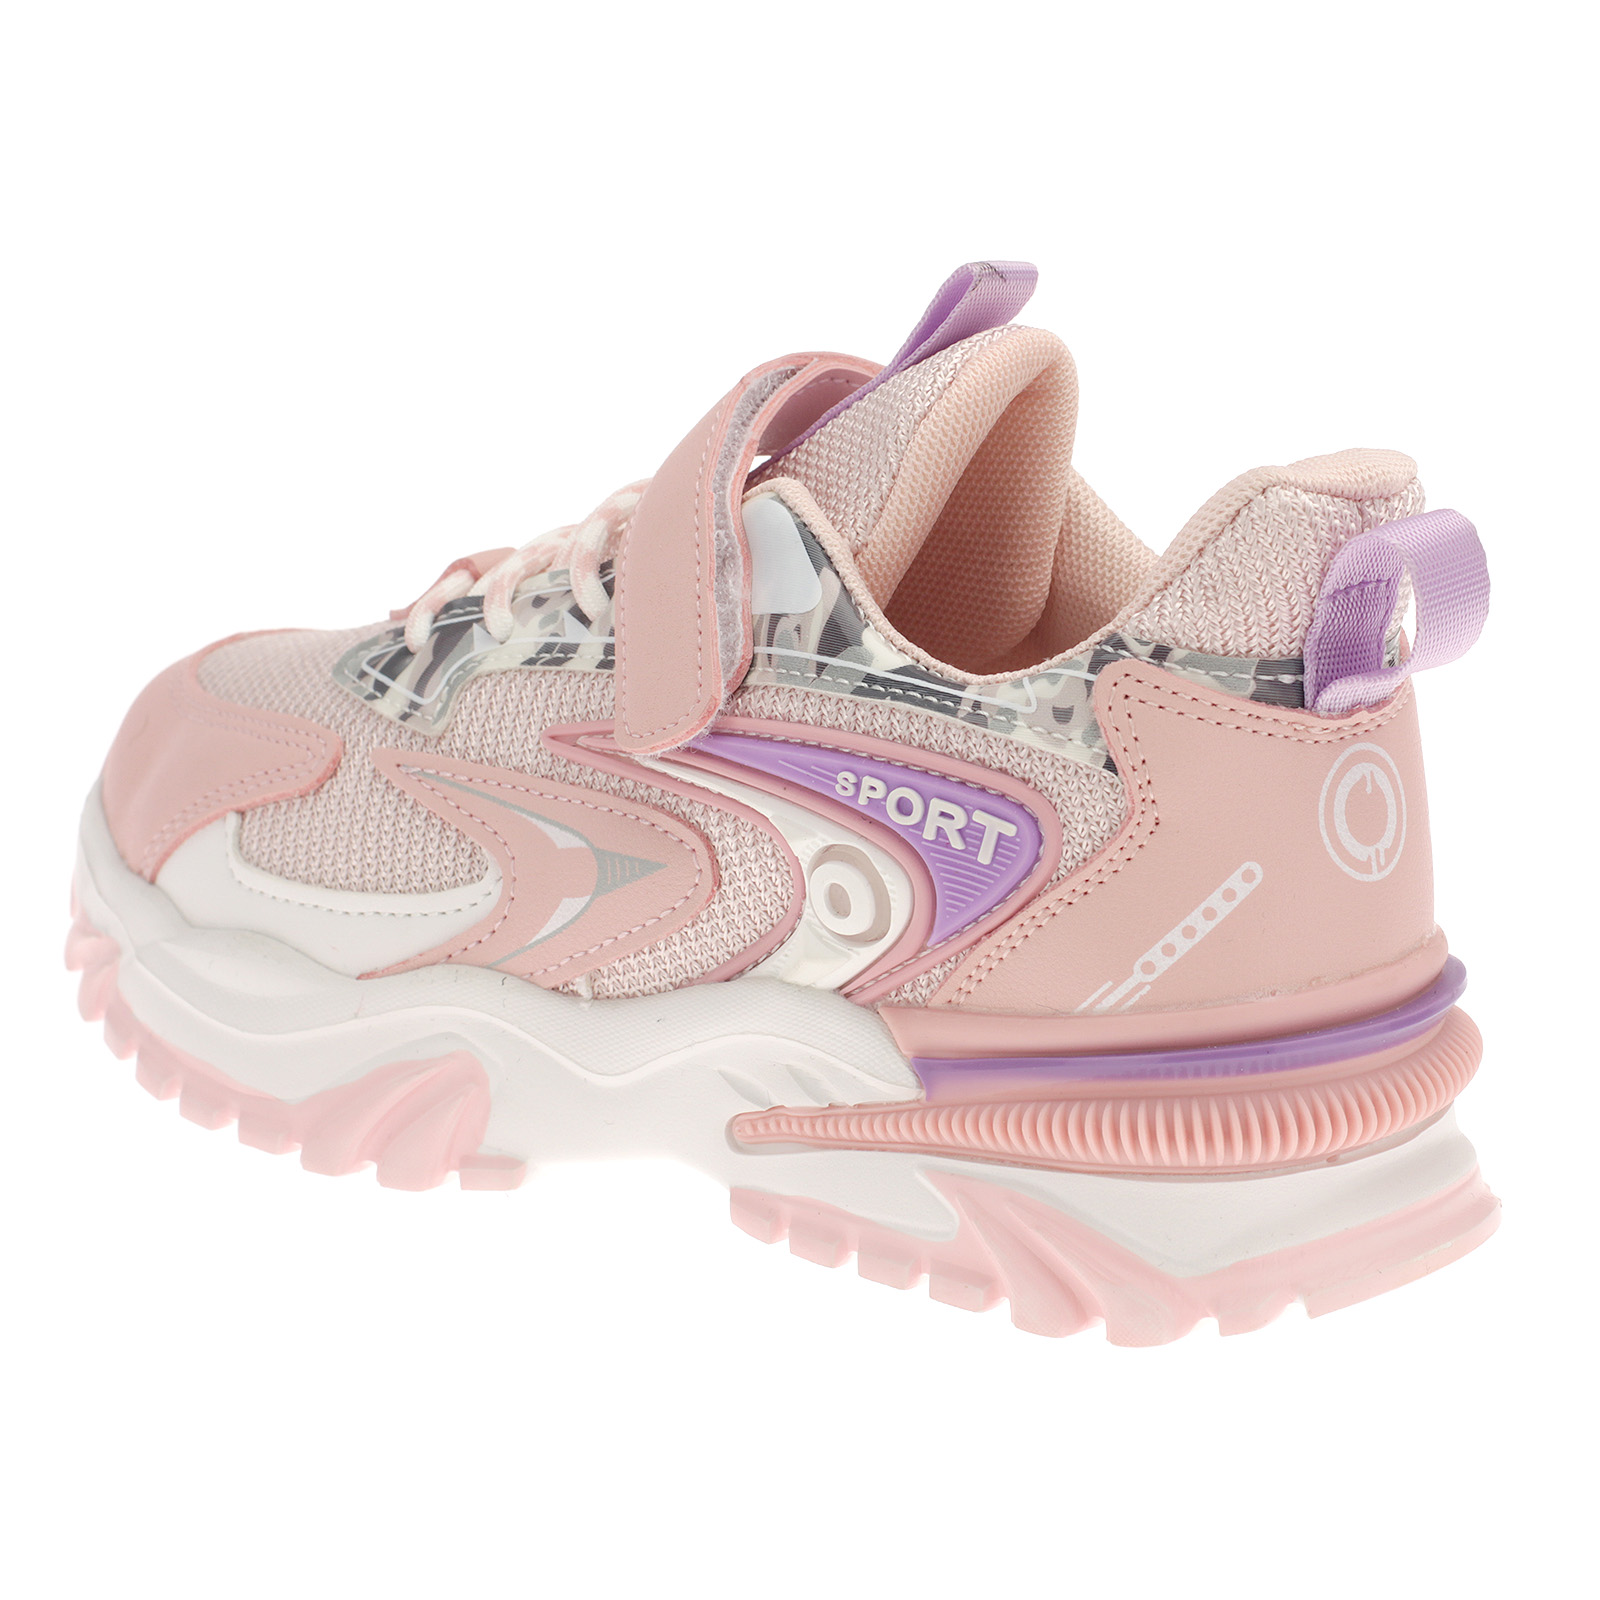 Kinderschuhe Sneaker Sportschuhe Turnschuhe Laufschuhe Klettverschluss 4052 Weiß Pink EUR 32